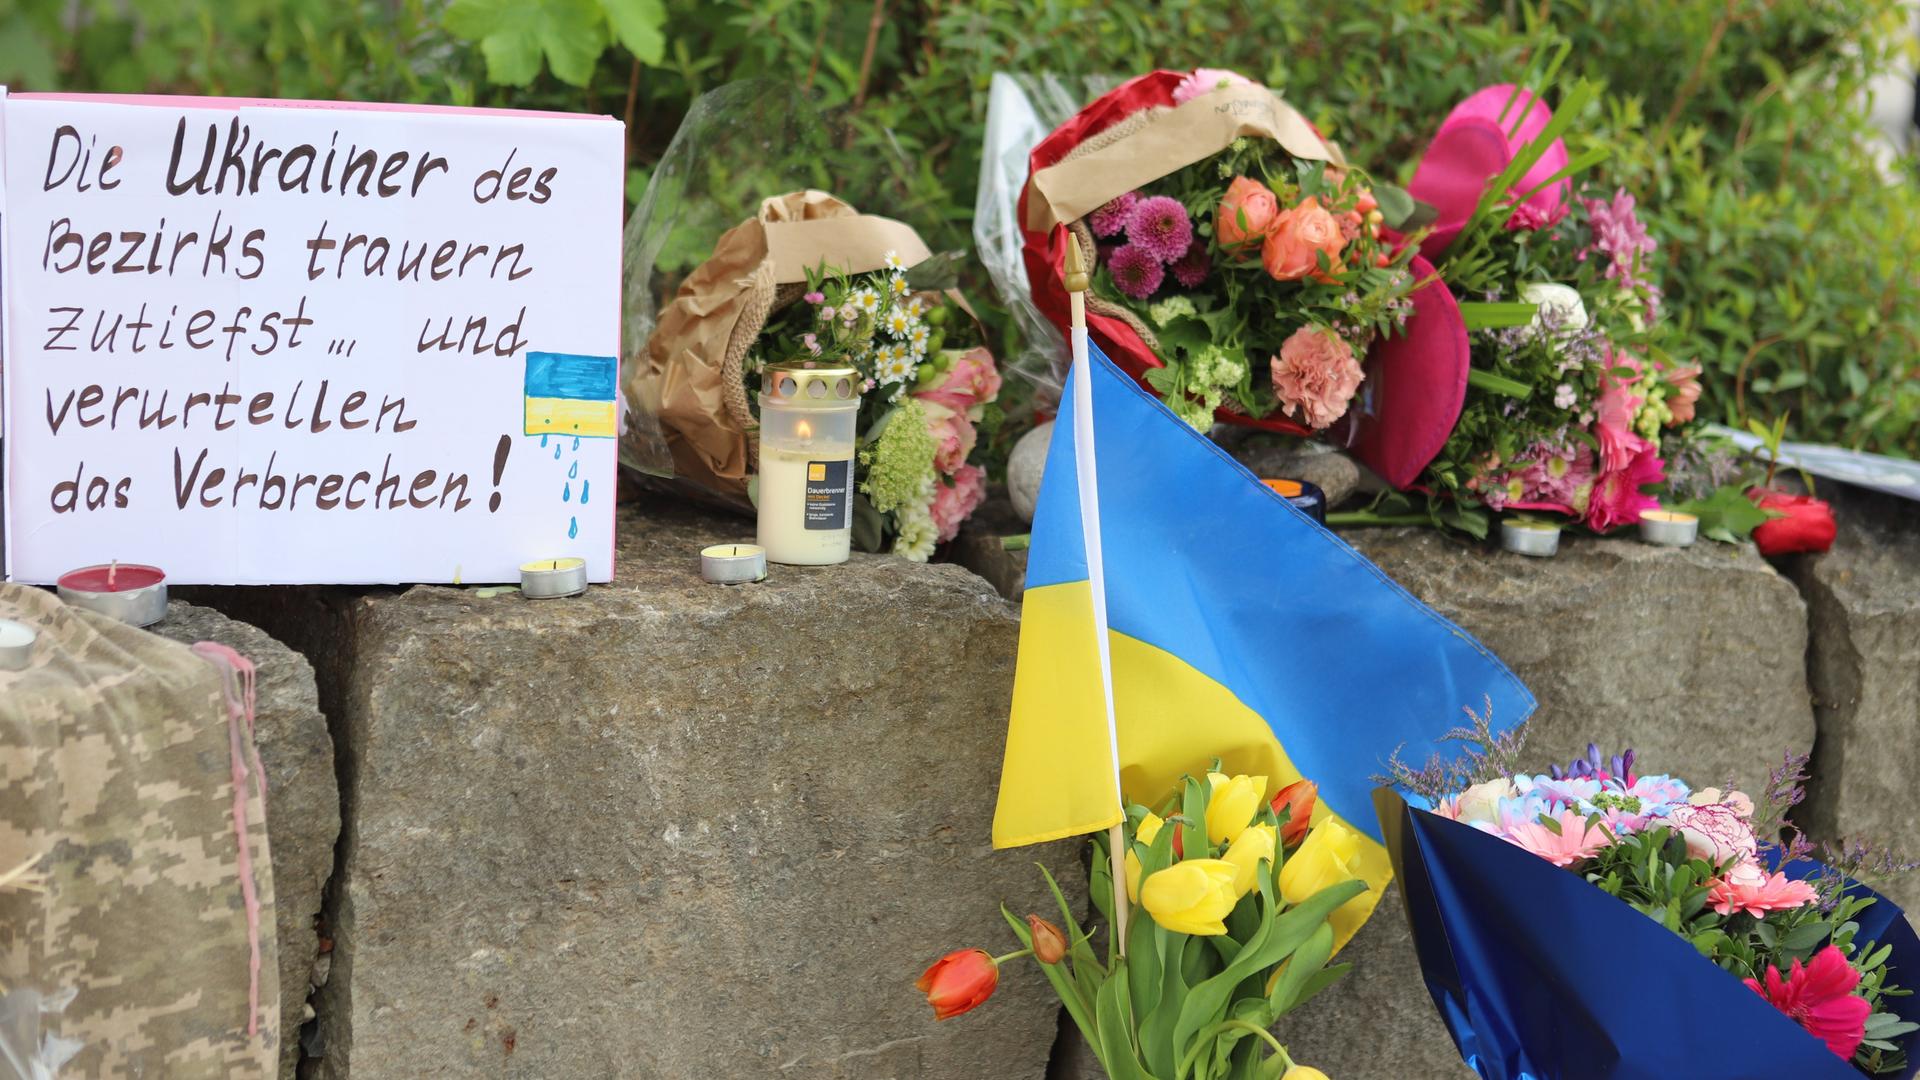 Er hangen bloemen en een Oekraïense vlag aan de muur.  Ernaast staat een kartonnen bord met de inscriptie 